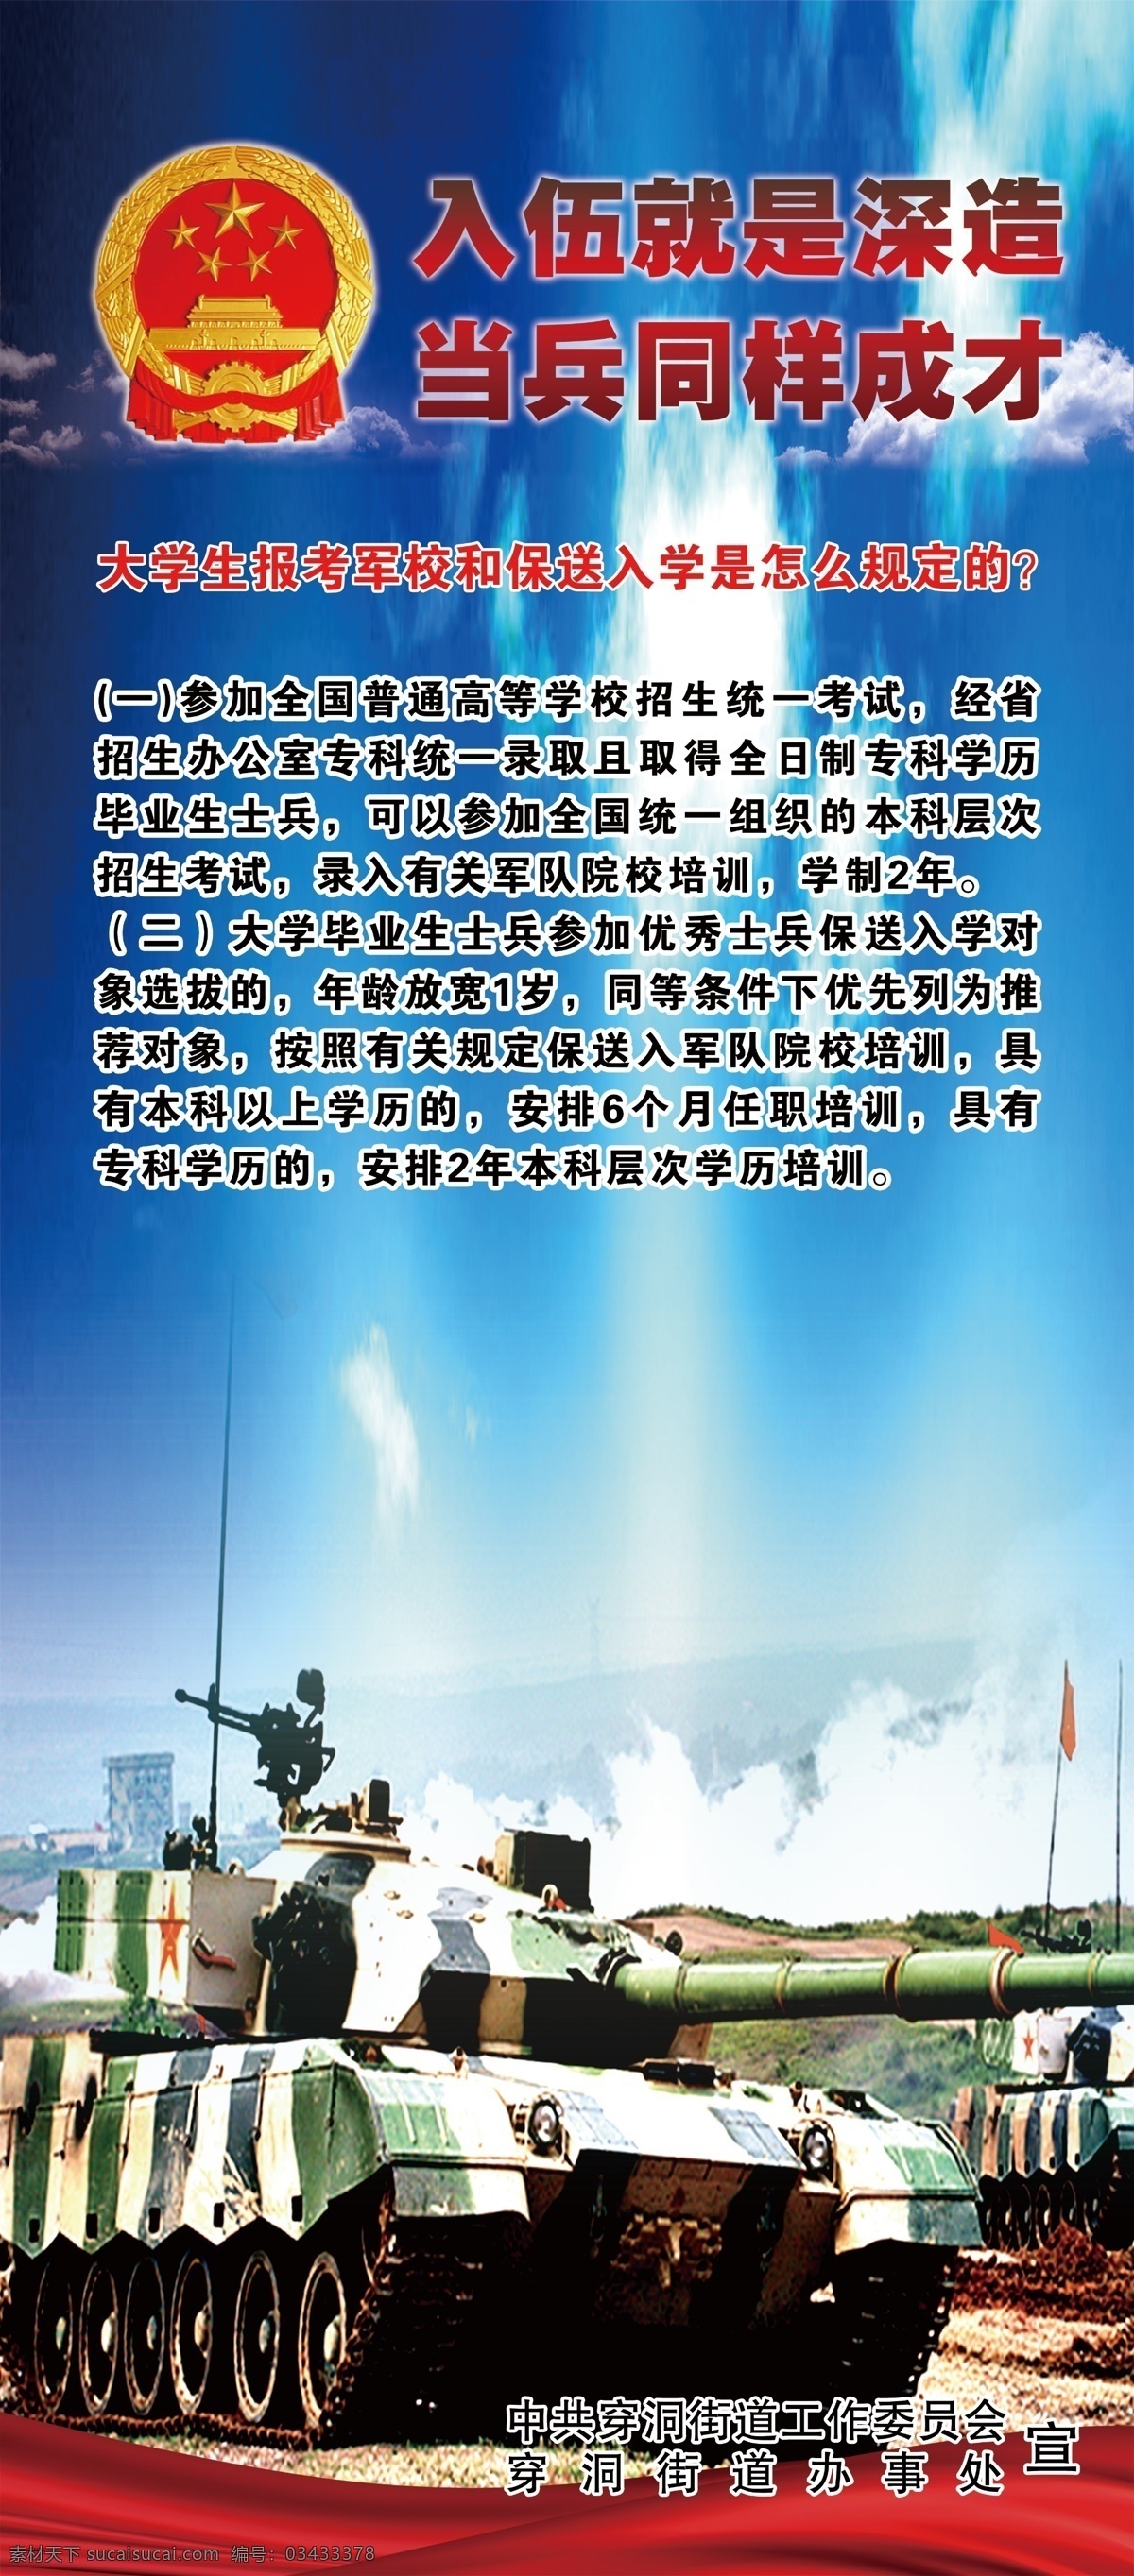 征兵 宣传 海报 展架 国防力量 室外广告设计